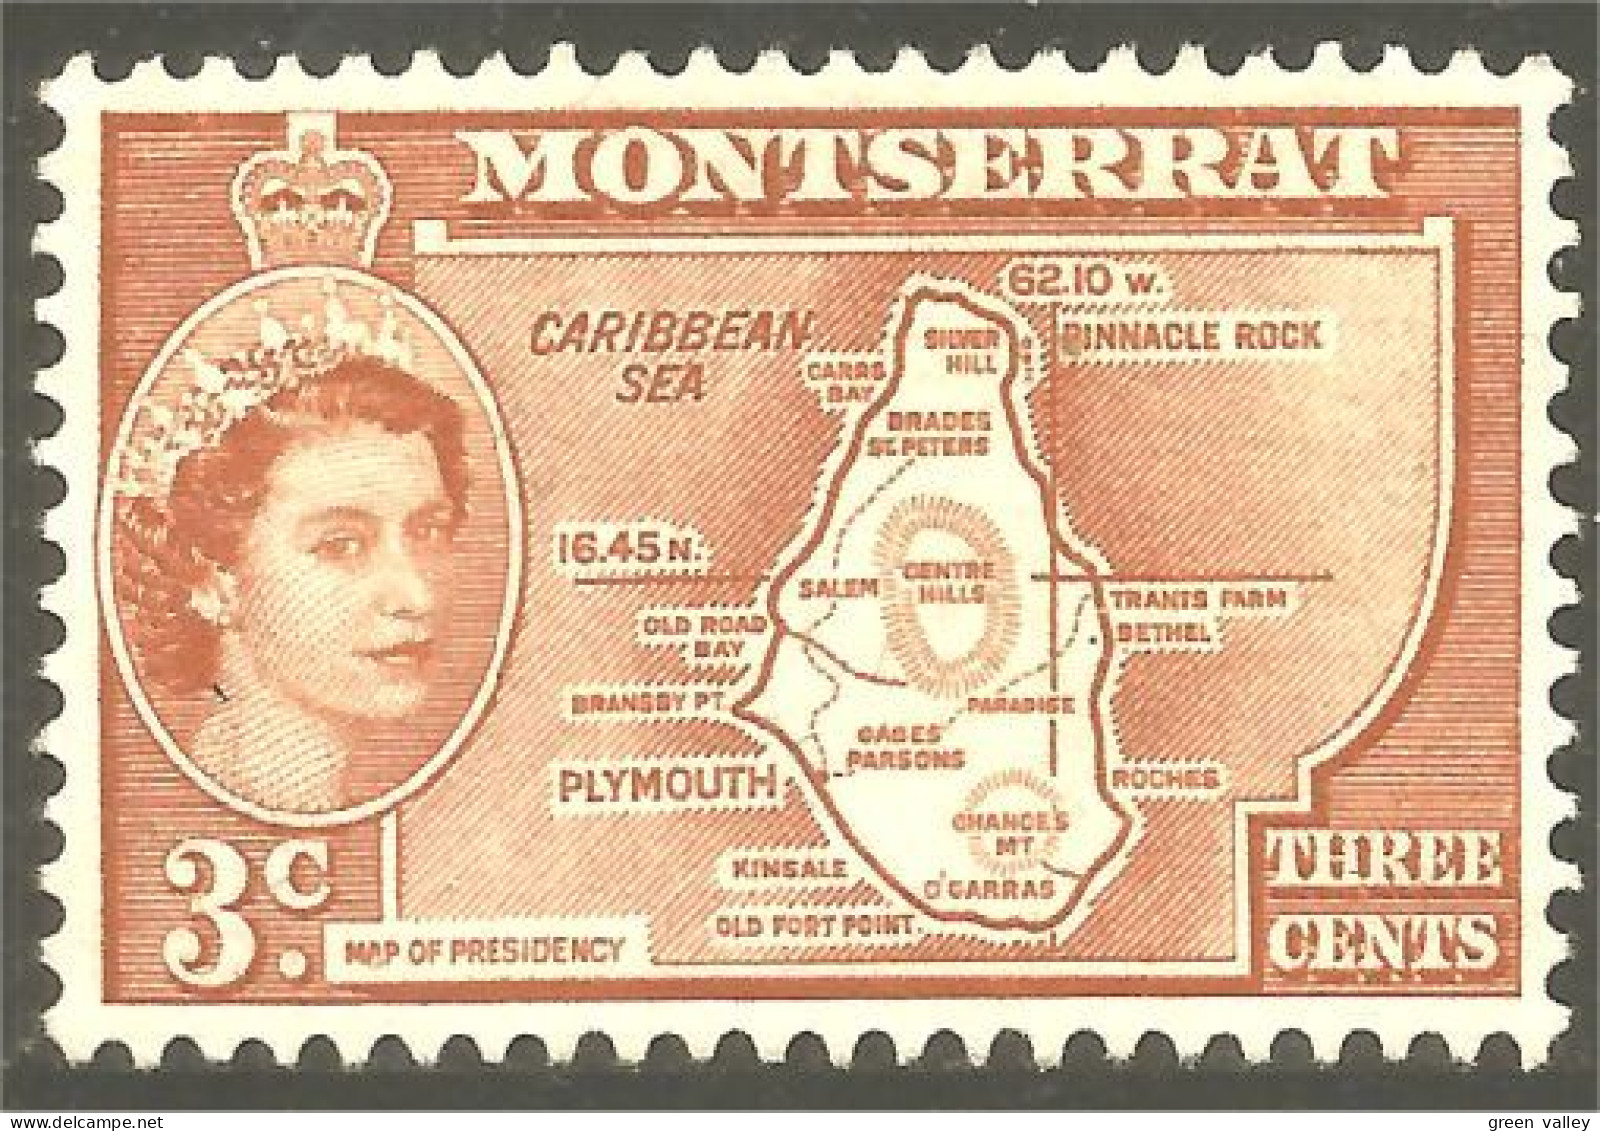 XW01-1376 Montserrat Map Colony Island Carte De L'ile No Gum Insel Karte No Gum - Montserrat